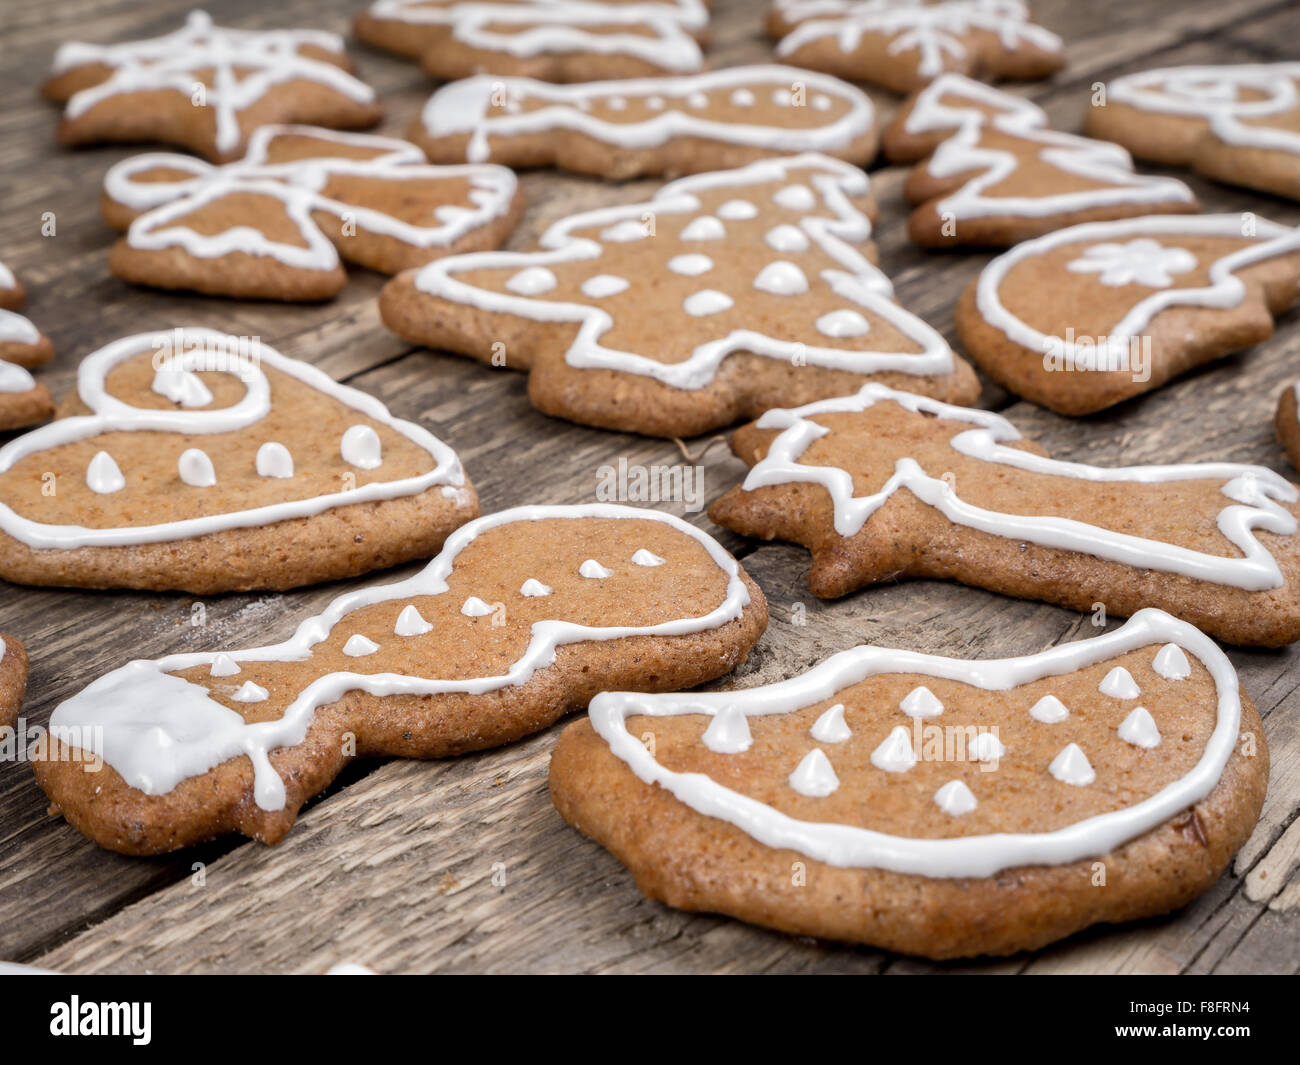 Forma diversa di panpepato di Natale i biscotti con la glassa bianca posta sul rustico in legno pannelli Foto Stock